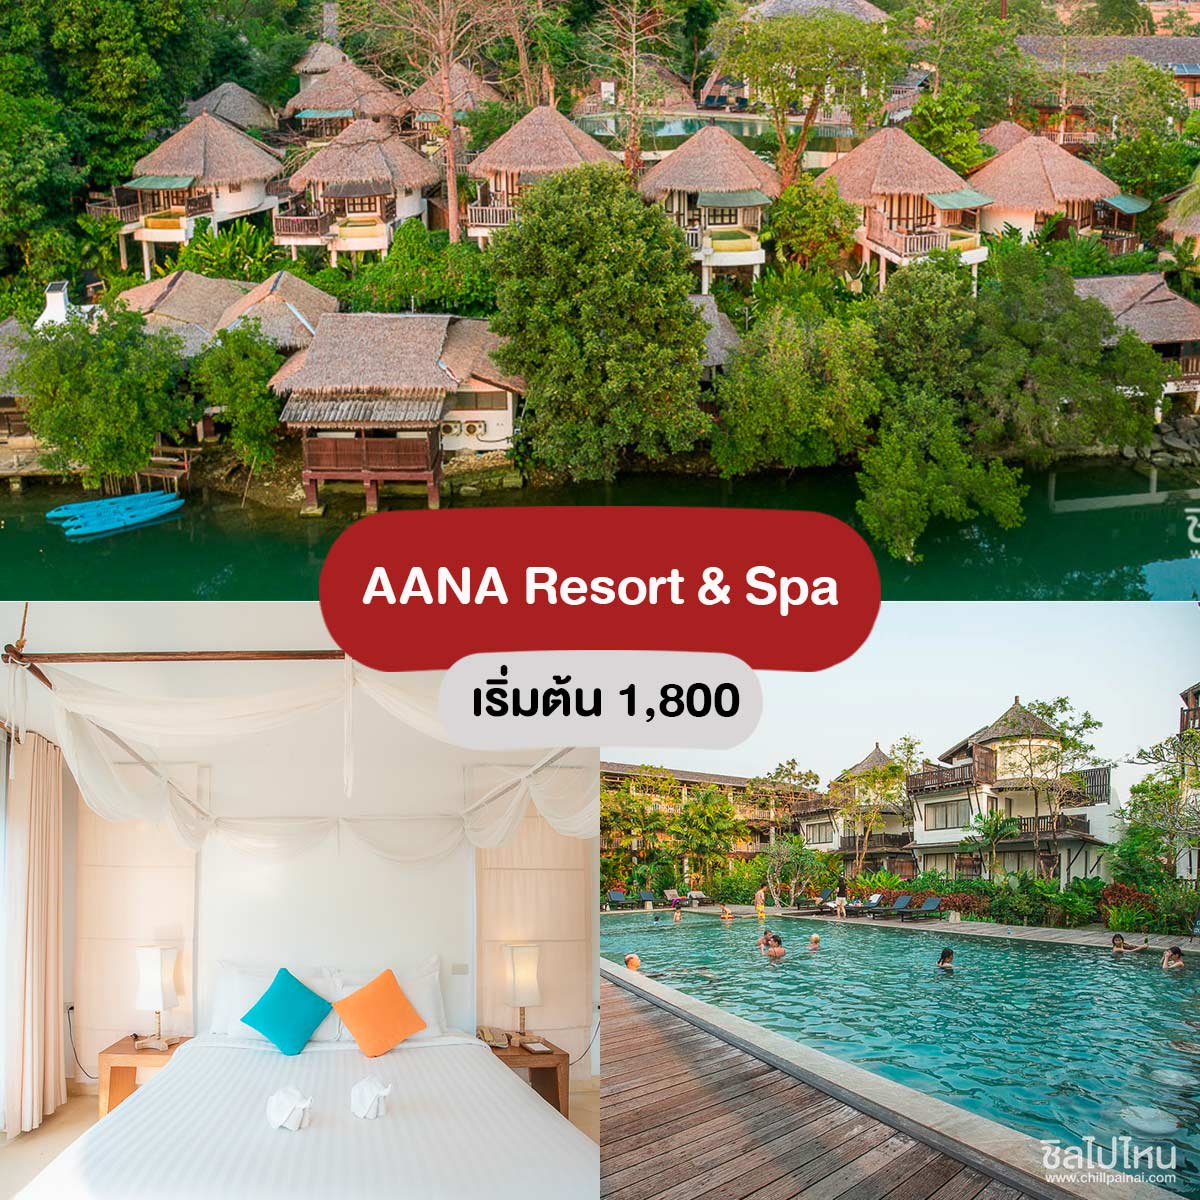 Aana Resort & Spa 